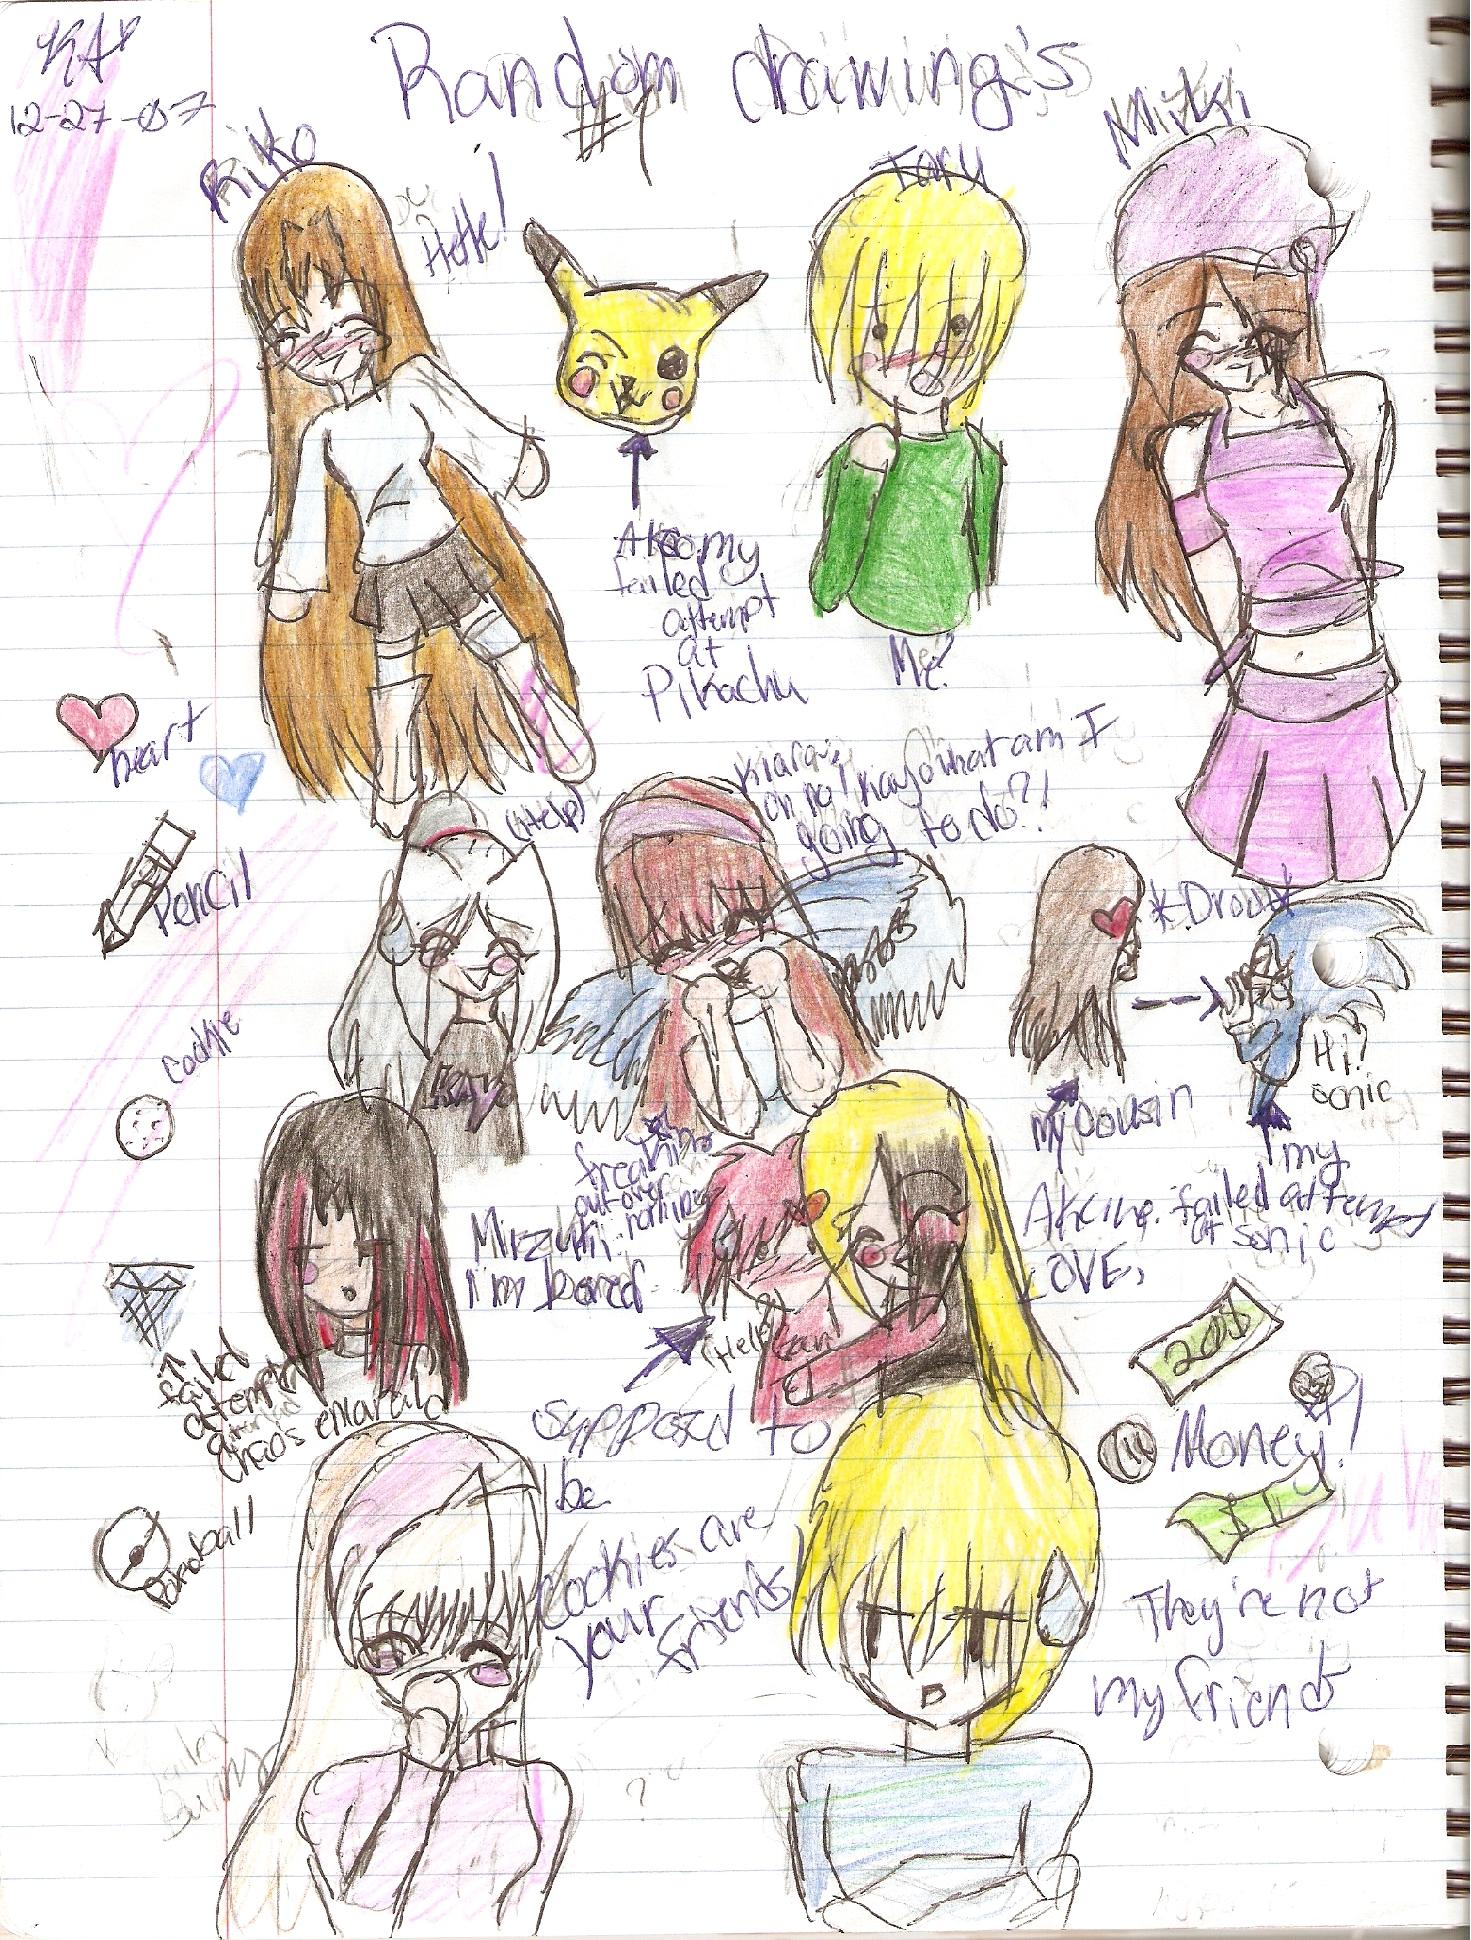 Random drawings by KiaraAkira